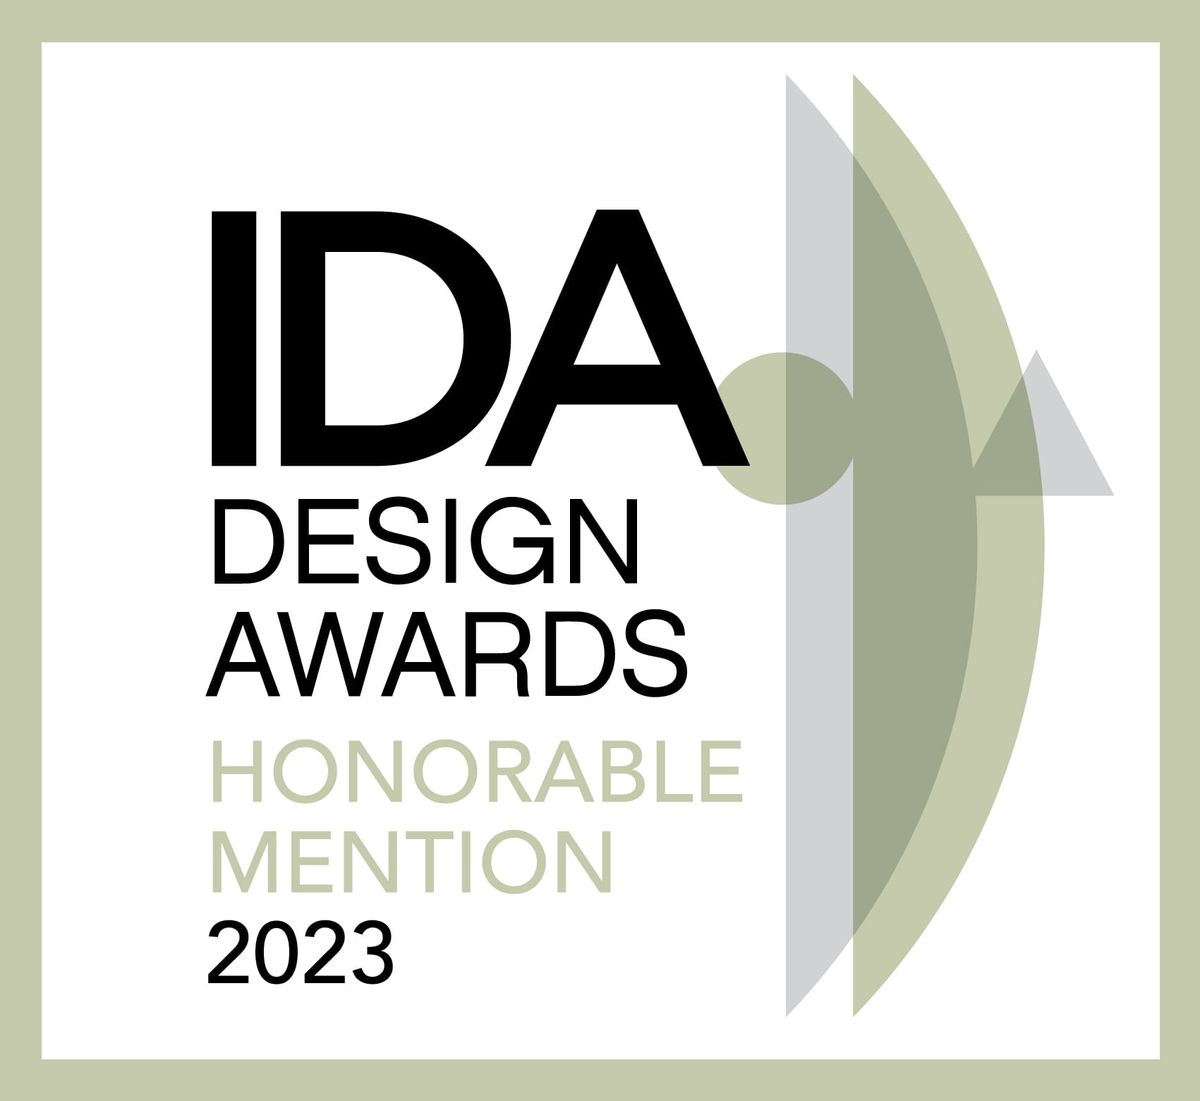 美國國際設計大獎；IDA；International Design Awards；國際獎項；美國；楊益嘉室內裝修；室內設計；空間設計；住宅空間